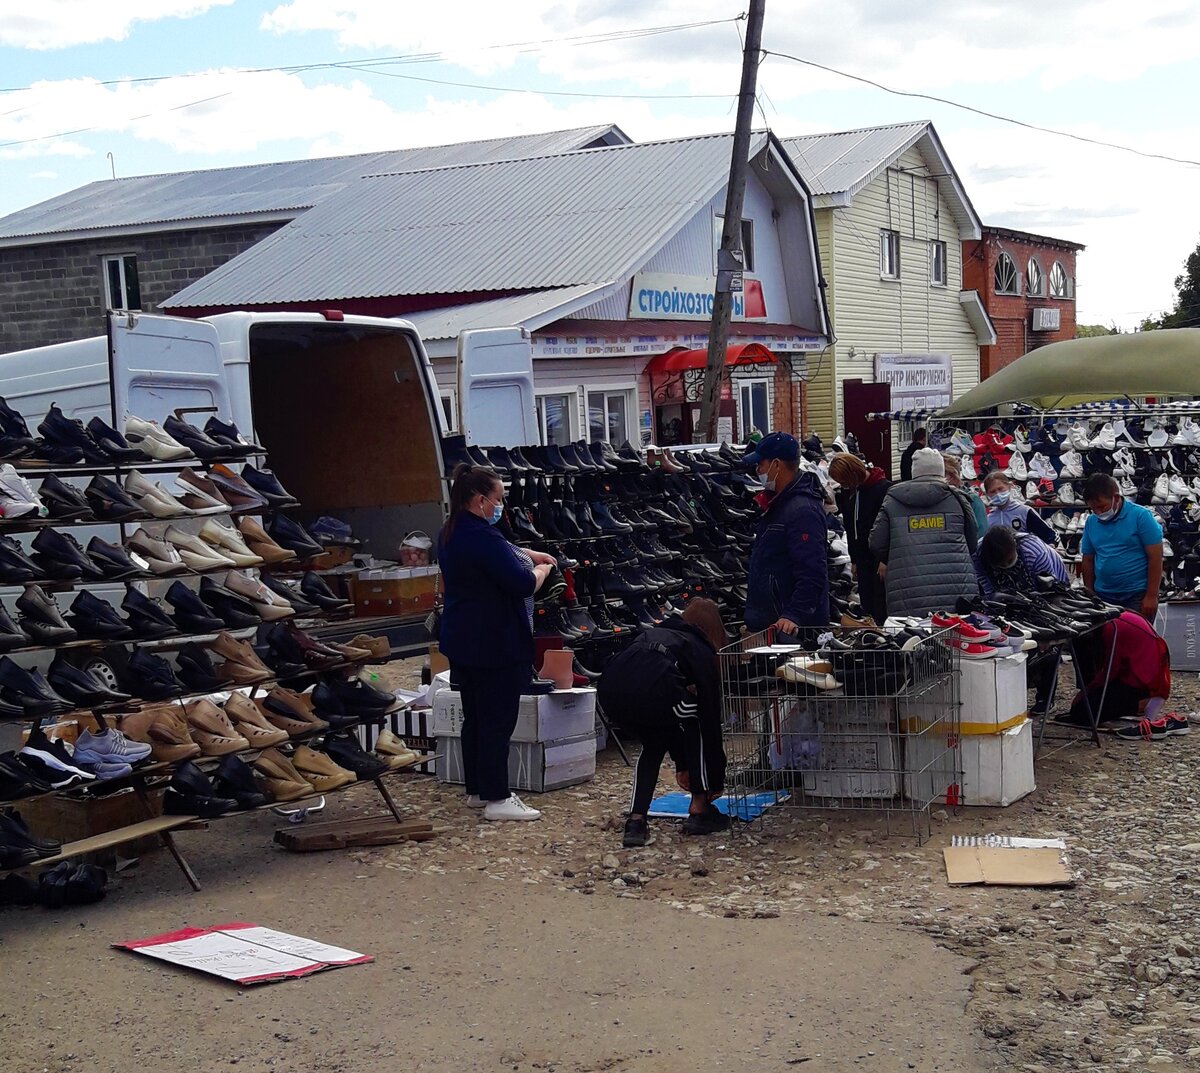 Бабкина майка за 150 рублей и туфли за 800 – как я попала на сельский базар Чувашии, показываю, что покупают местные